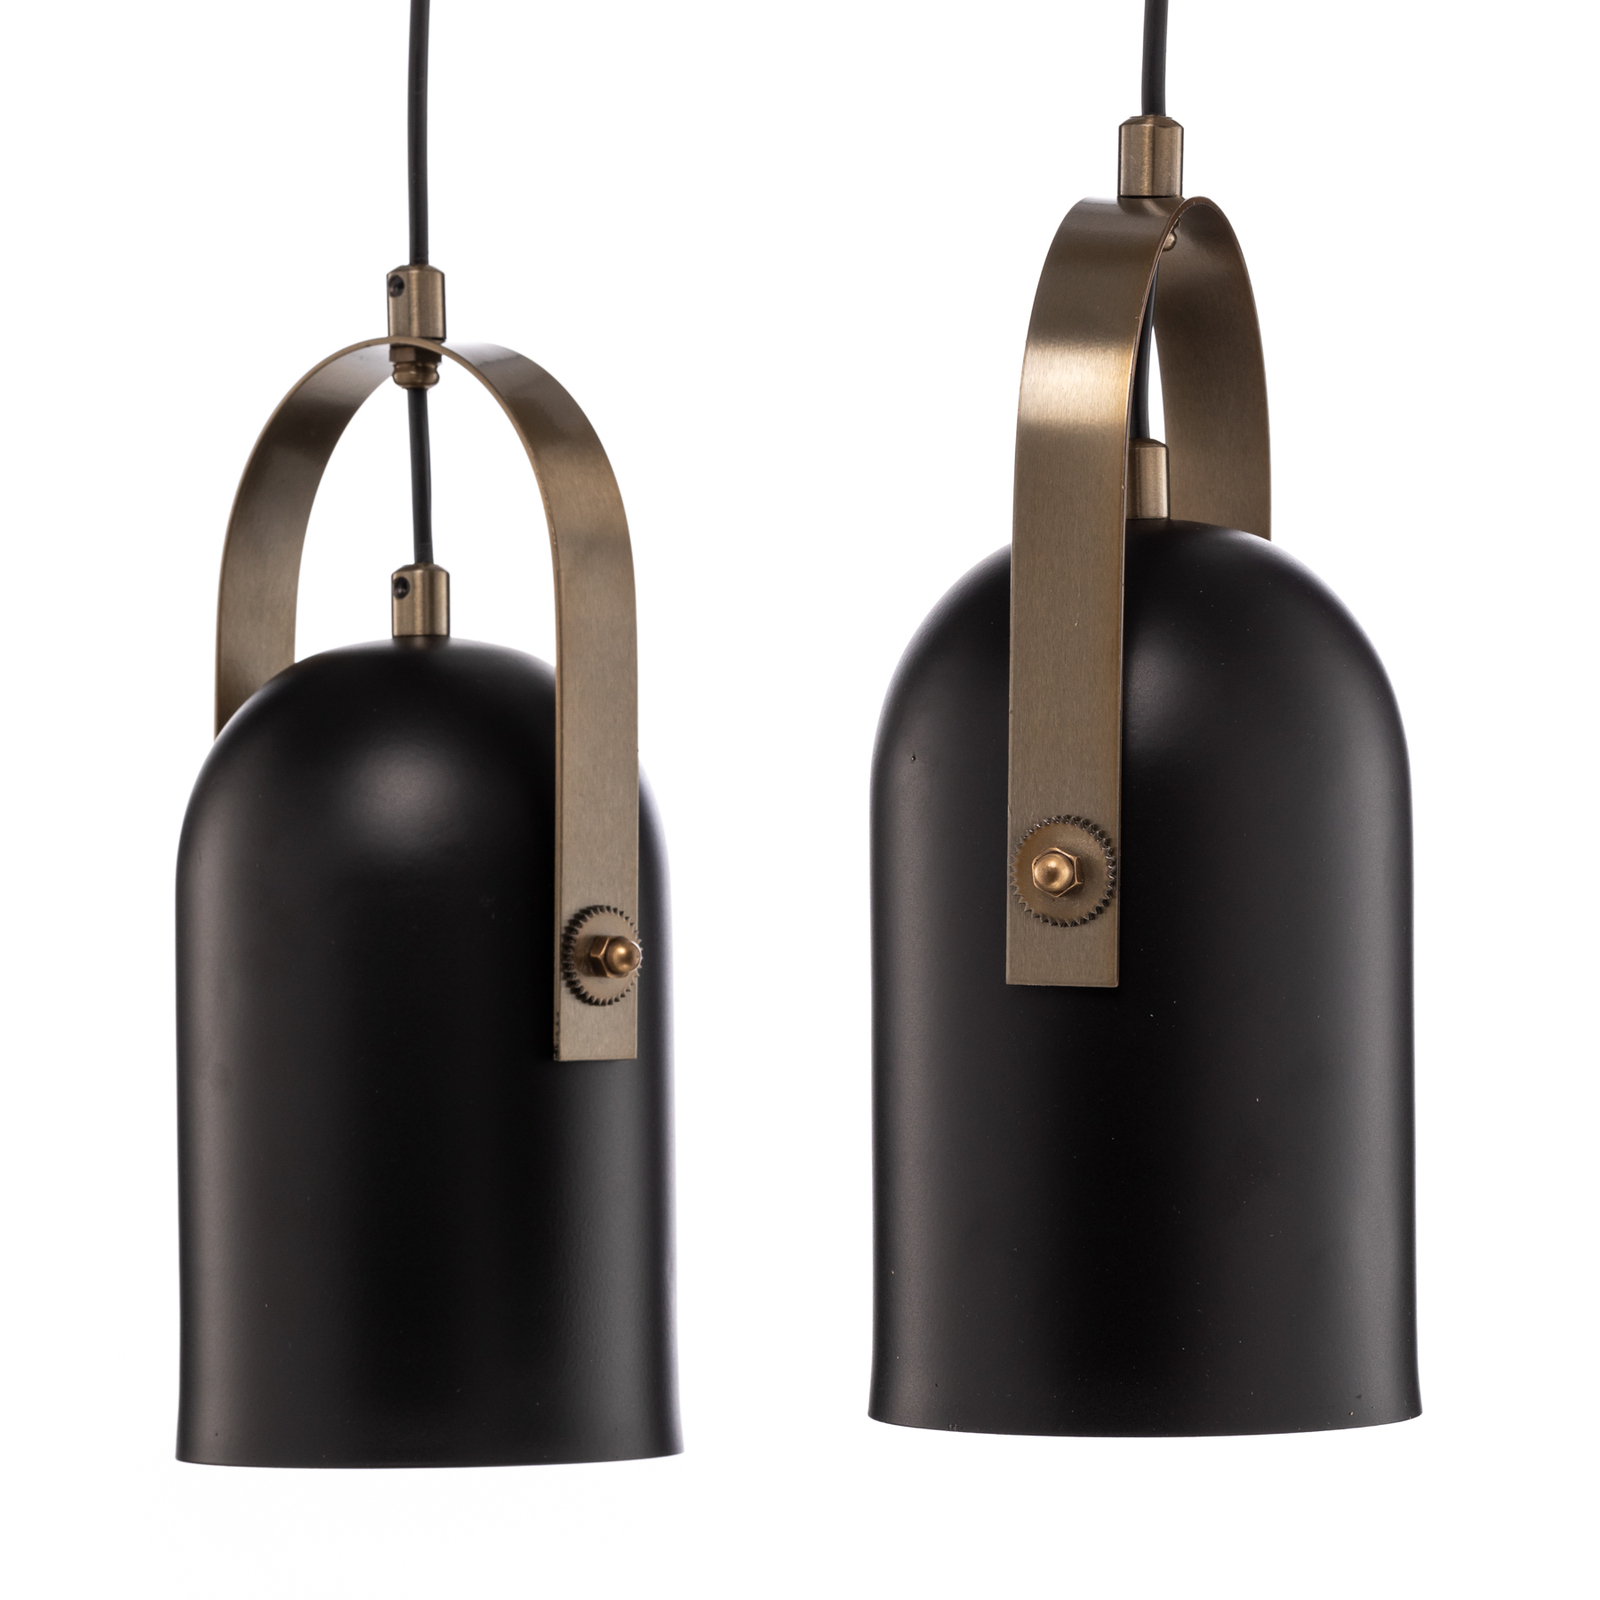 Hanglamp AV-1860-4EY in zwart/goud antiek